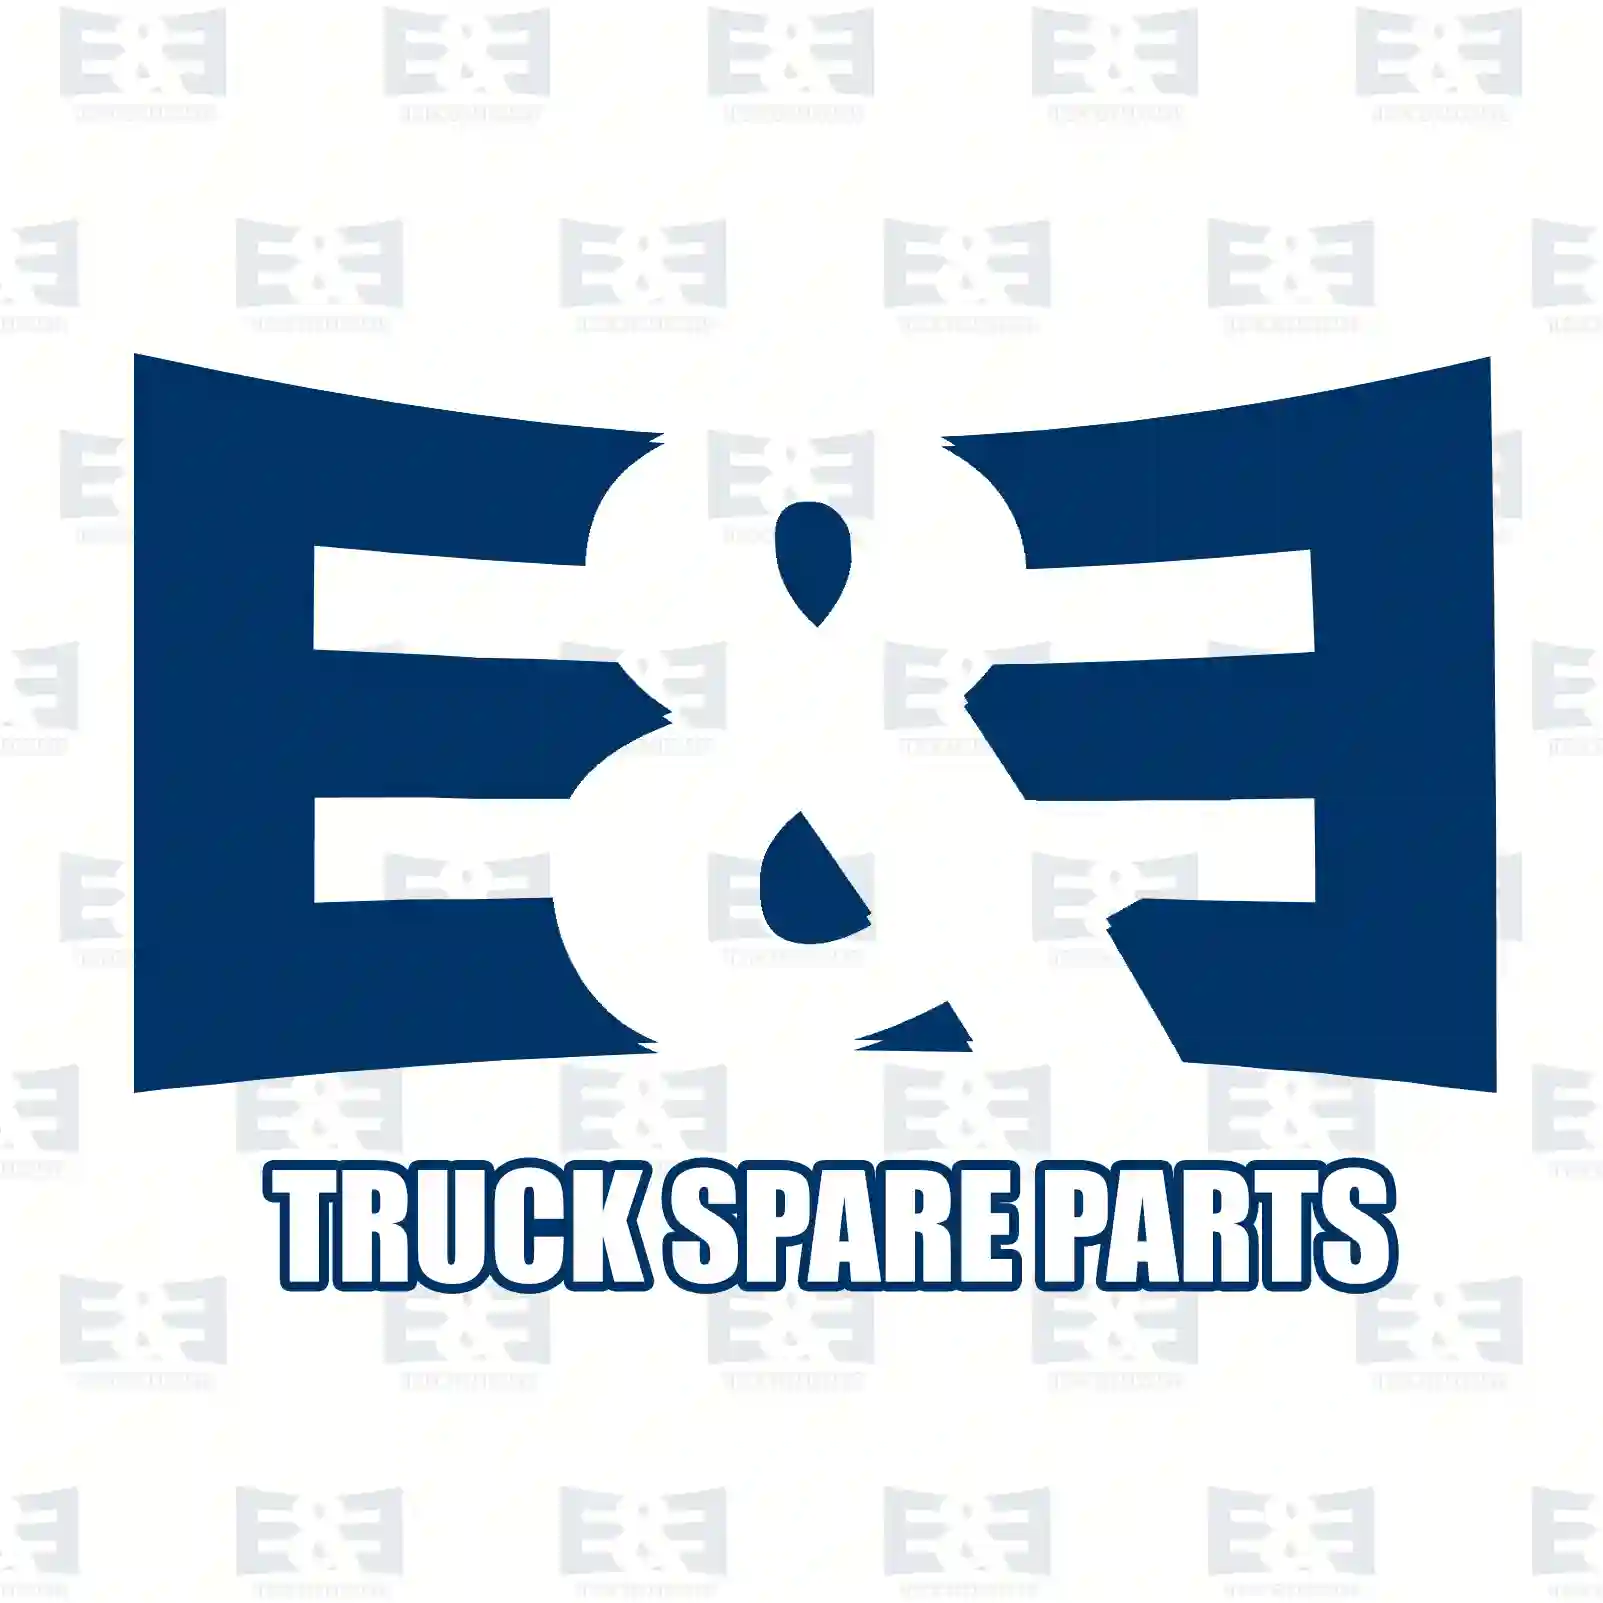 Control cable, Switching, 2E2277673, 7420879518, 20879 ||  2E2277673 E&E Truck Spare Parts | Truck Spare Parts, Auotomotive Spare Parts Control cable, Switching, 2E2277673, 7420879518, 20879 ||  2E2277673 E&E Truck Spare Parts | Truck Spare Parts, Auotomotive Spare Parts